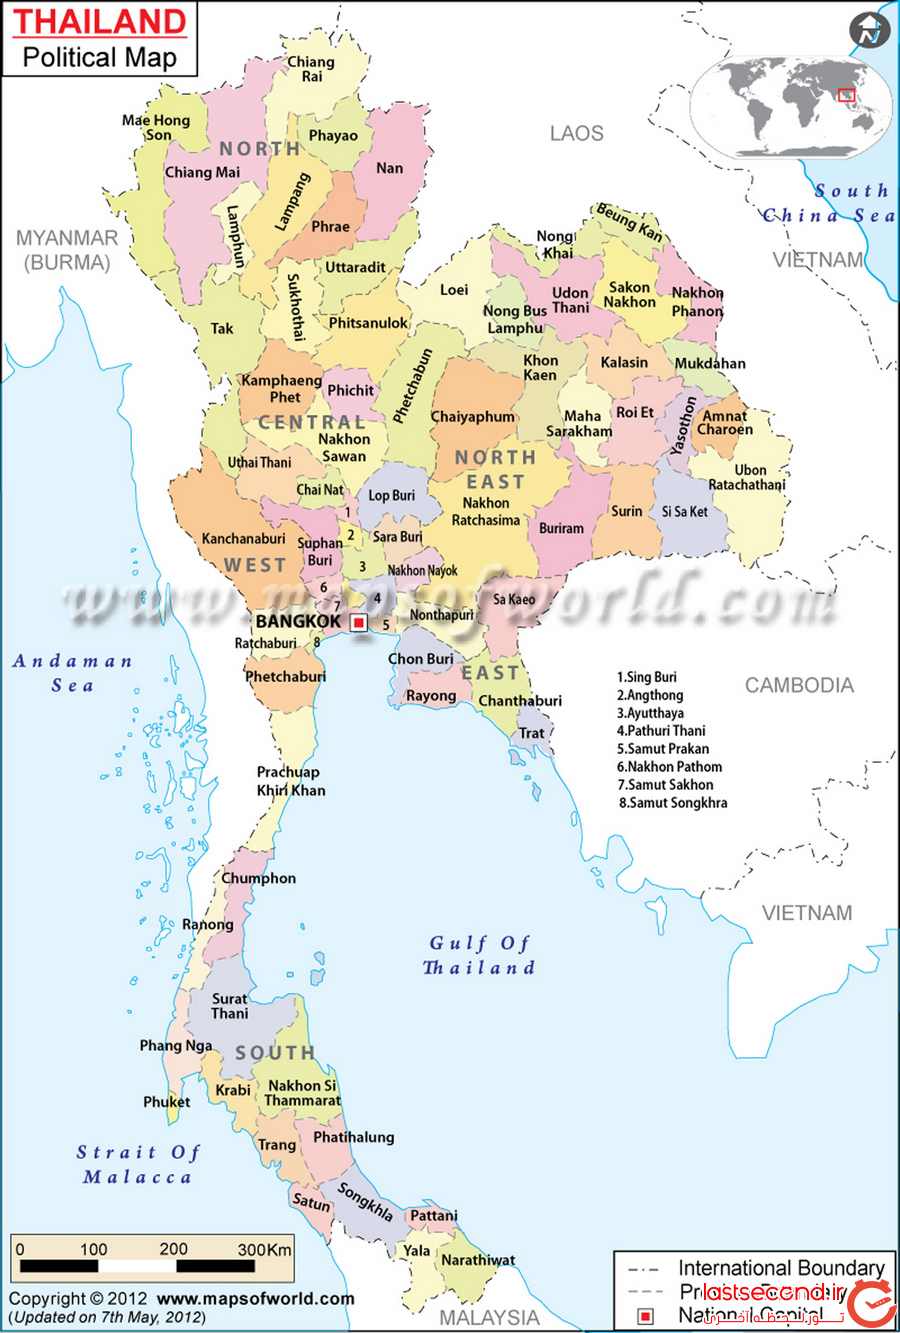  بانکوک، سلطان گردشگری آسیا و کارهایی که باید انجام داد